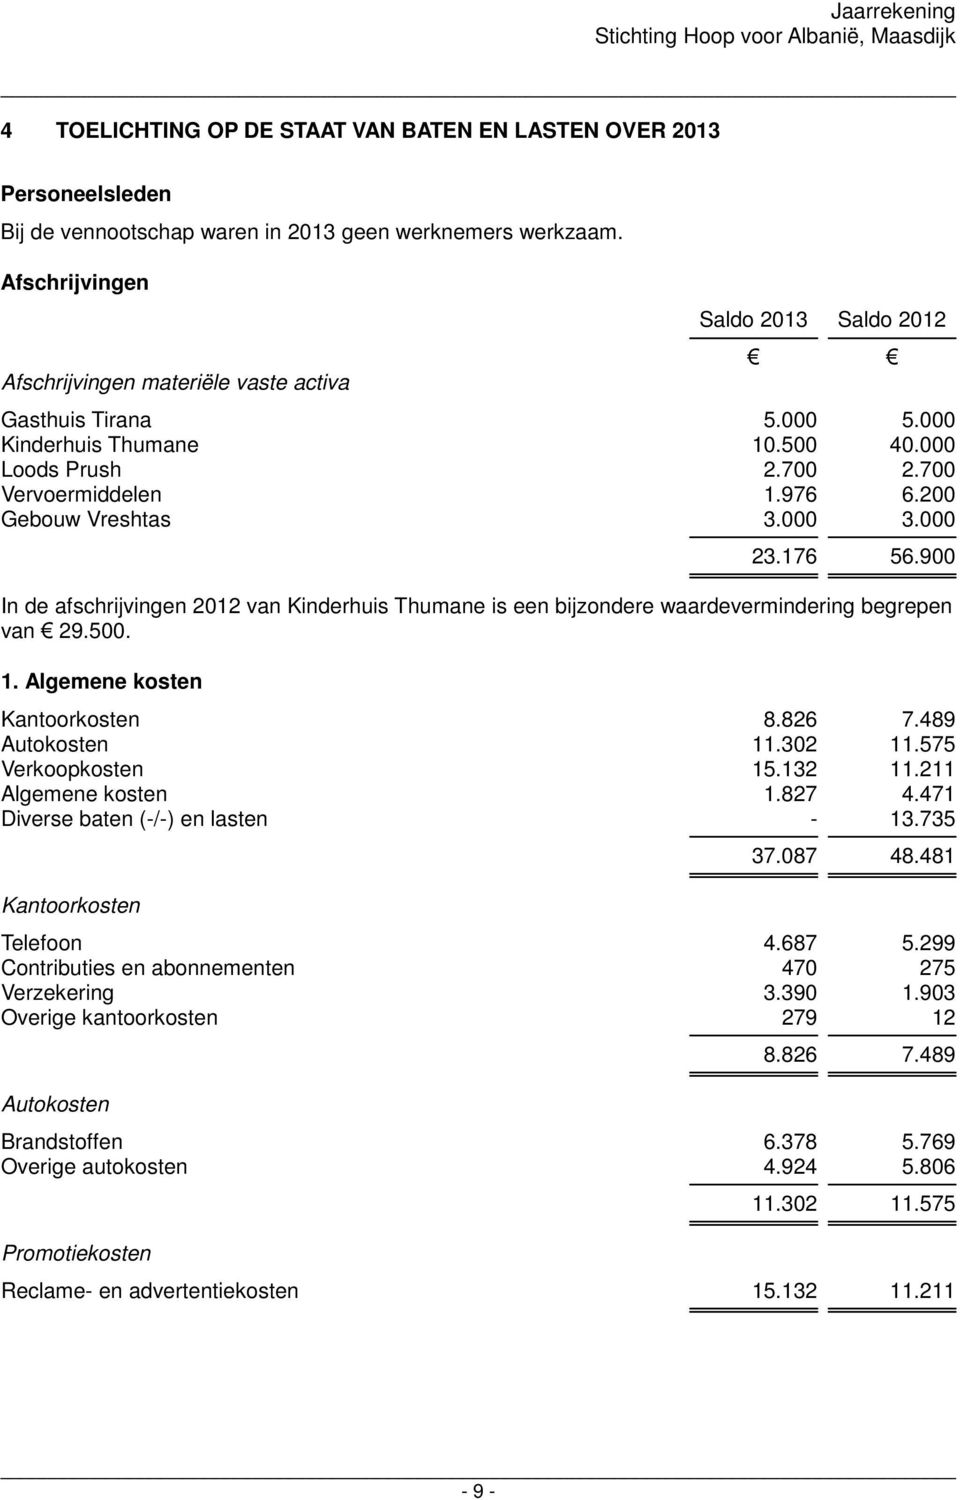 200 Gebouw Vreshtas 3.000 3.000 23.176 56.900 In de afschrijvingen 2012 van Kinderhuis Thumane is een bijzondere waardevermindering begrepen van 29.500. 1. Algemene kosten Kantoorkosten 8.826 7.